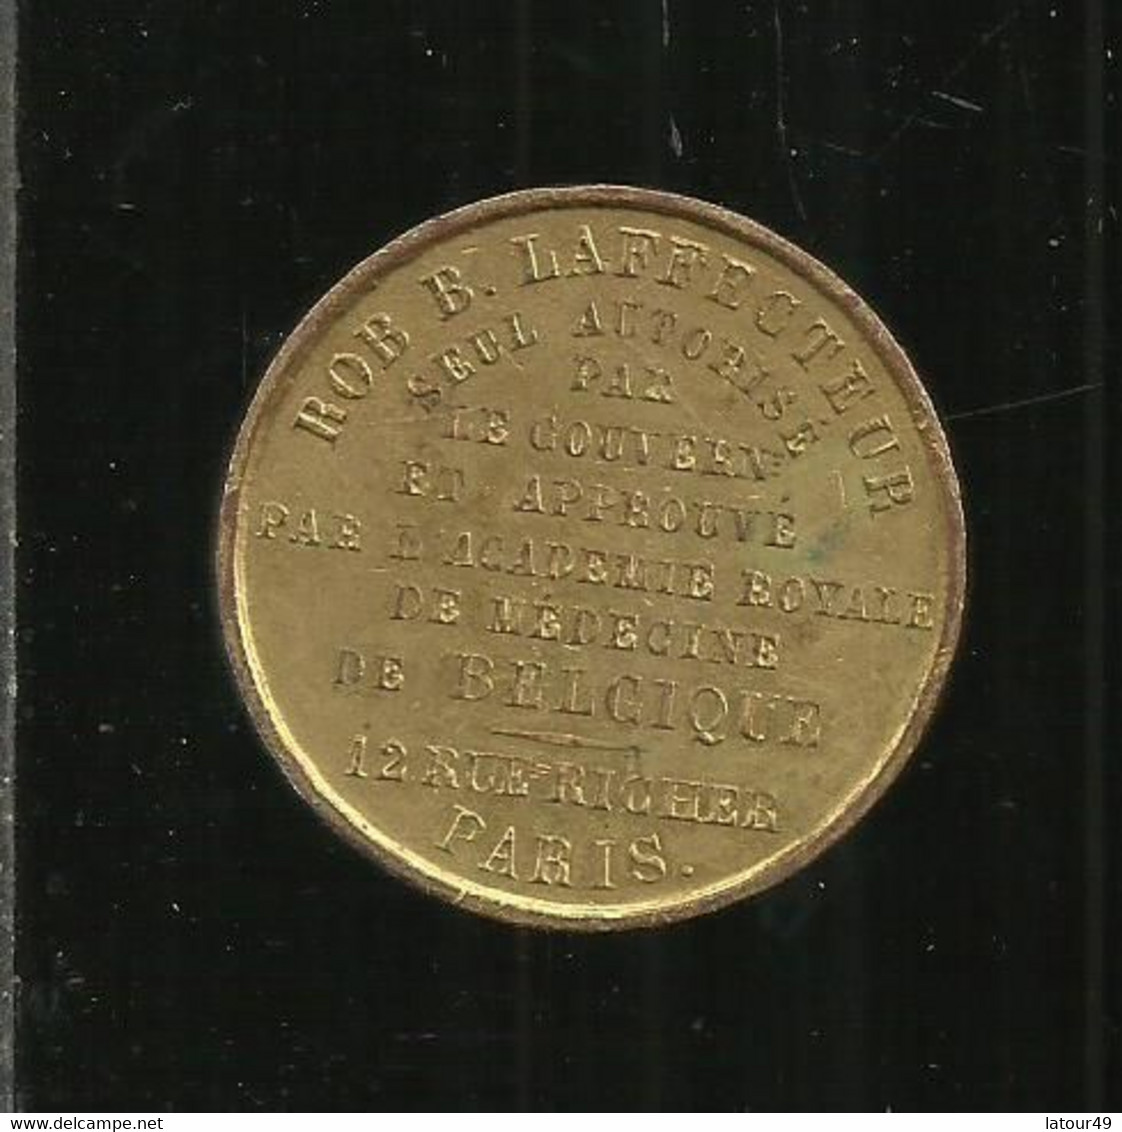 Ancienne Medaille  Academie Rle  De Medecine De Belgique Bob Laffecteur  Seul Autorise Par Le  Gouvernement Et Approuve - Royal / Of Nobility